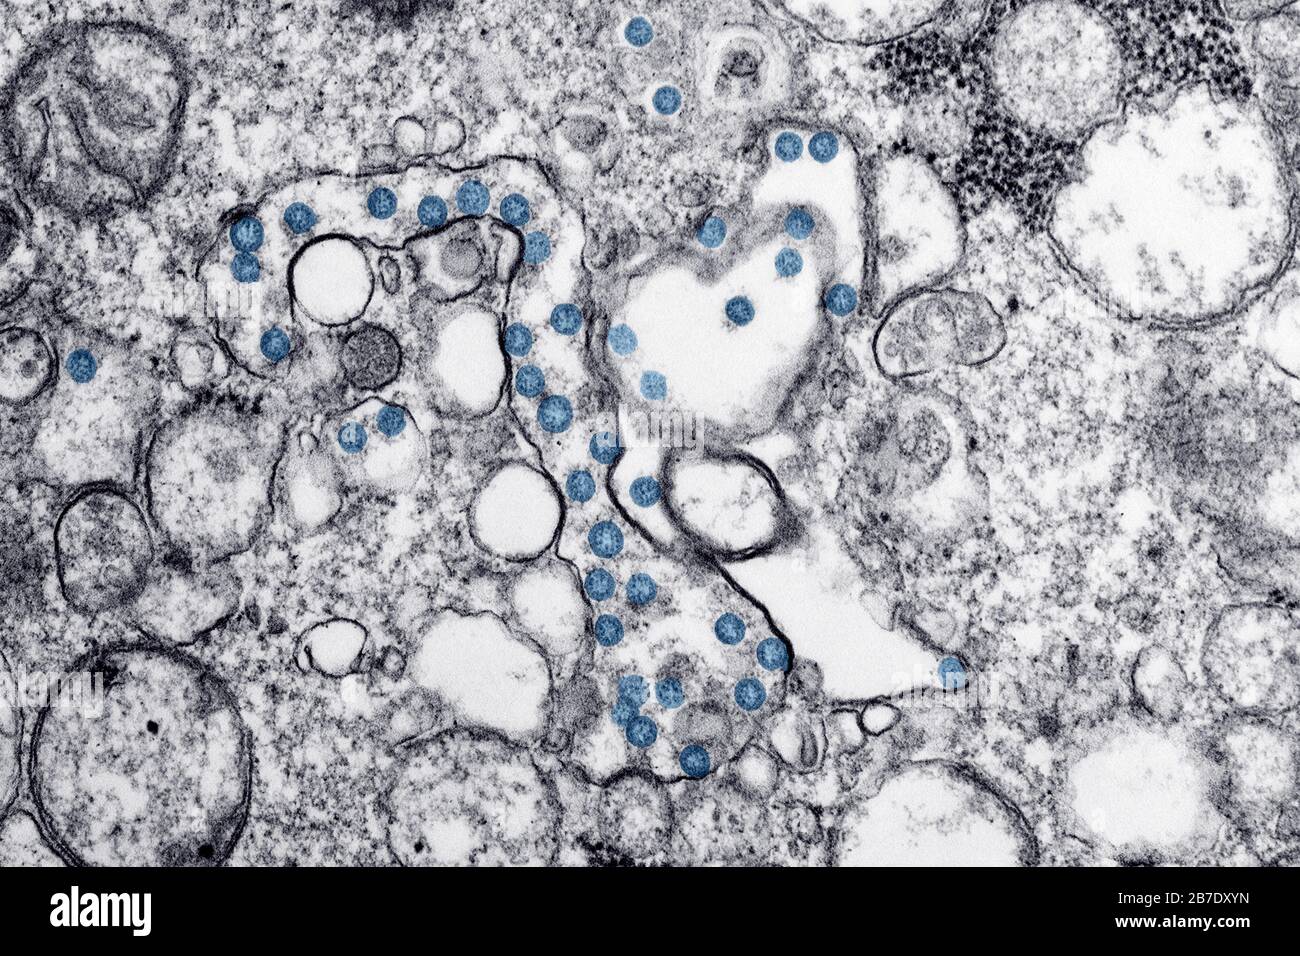 Transmissionselektronenmikroskopisches Bild eines Isolats vom ersten US-Fall von COVID-19, früher bekannt als 2019-nCoV. Die blau gefärbten kugelförmigen Viruspartikel enthalten Querschnitte durch das virale Genom, die als schwarze Punkte angesehen werden. Credit: UPI/Alamy Live News Stockfoto